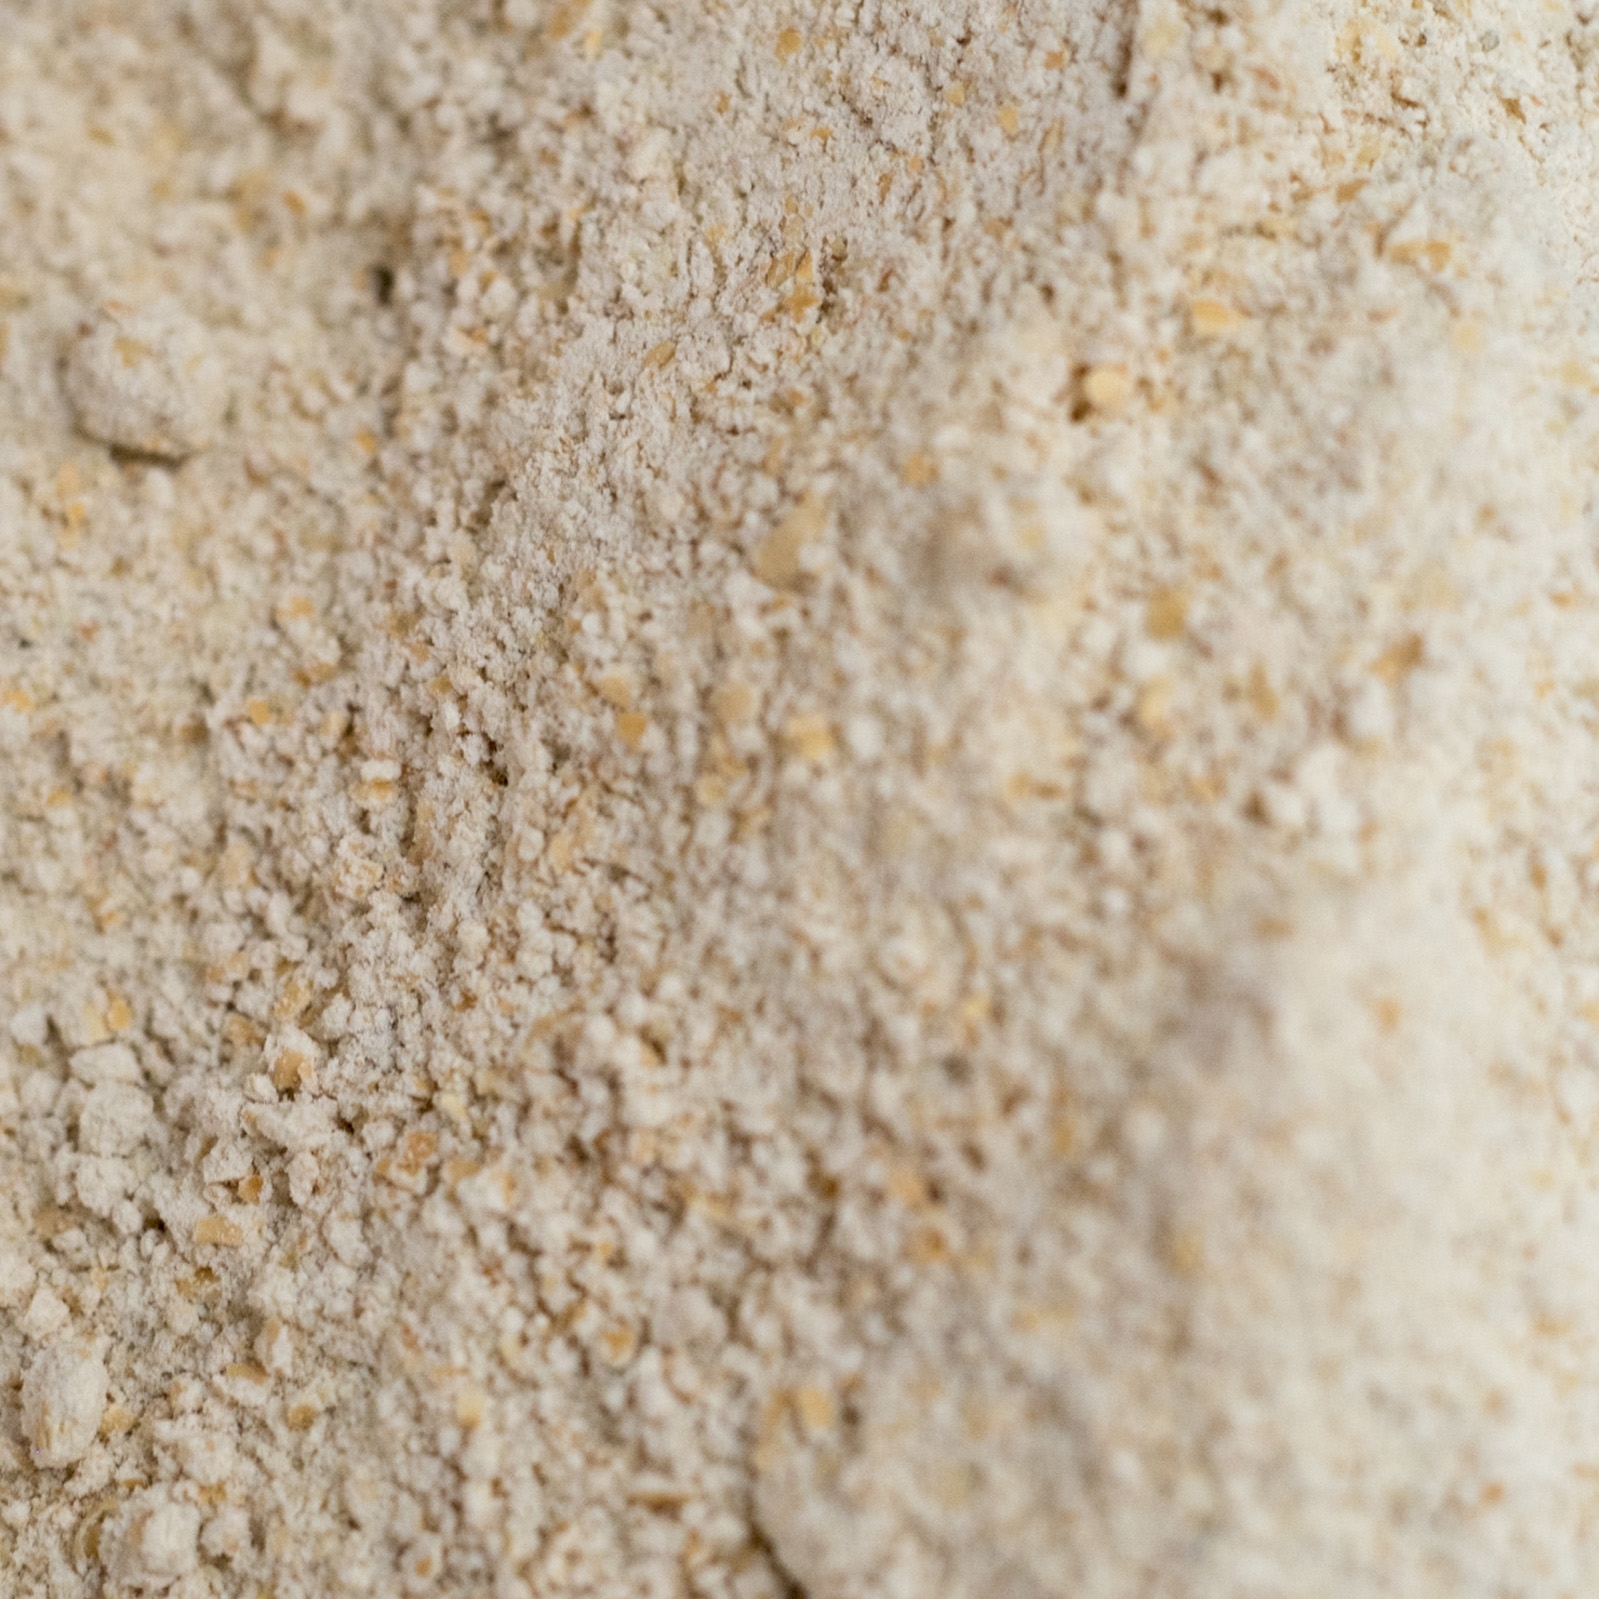 Despelta - Lote de harinas de espelta ecológicas molidas a piedra 1Kg, 4uds